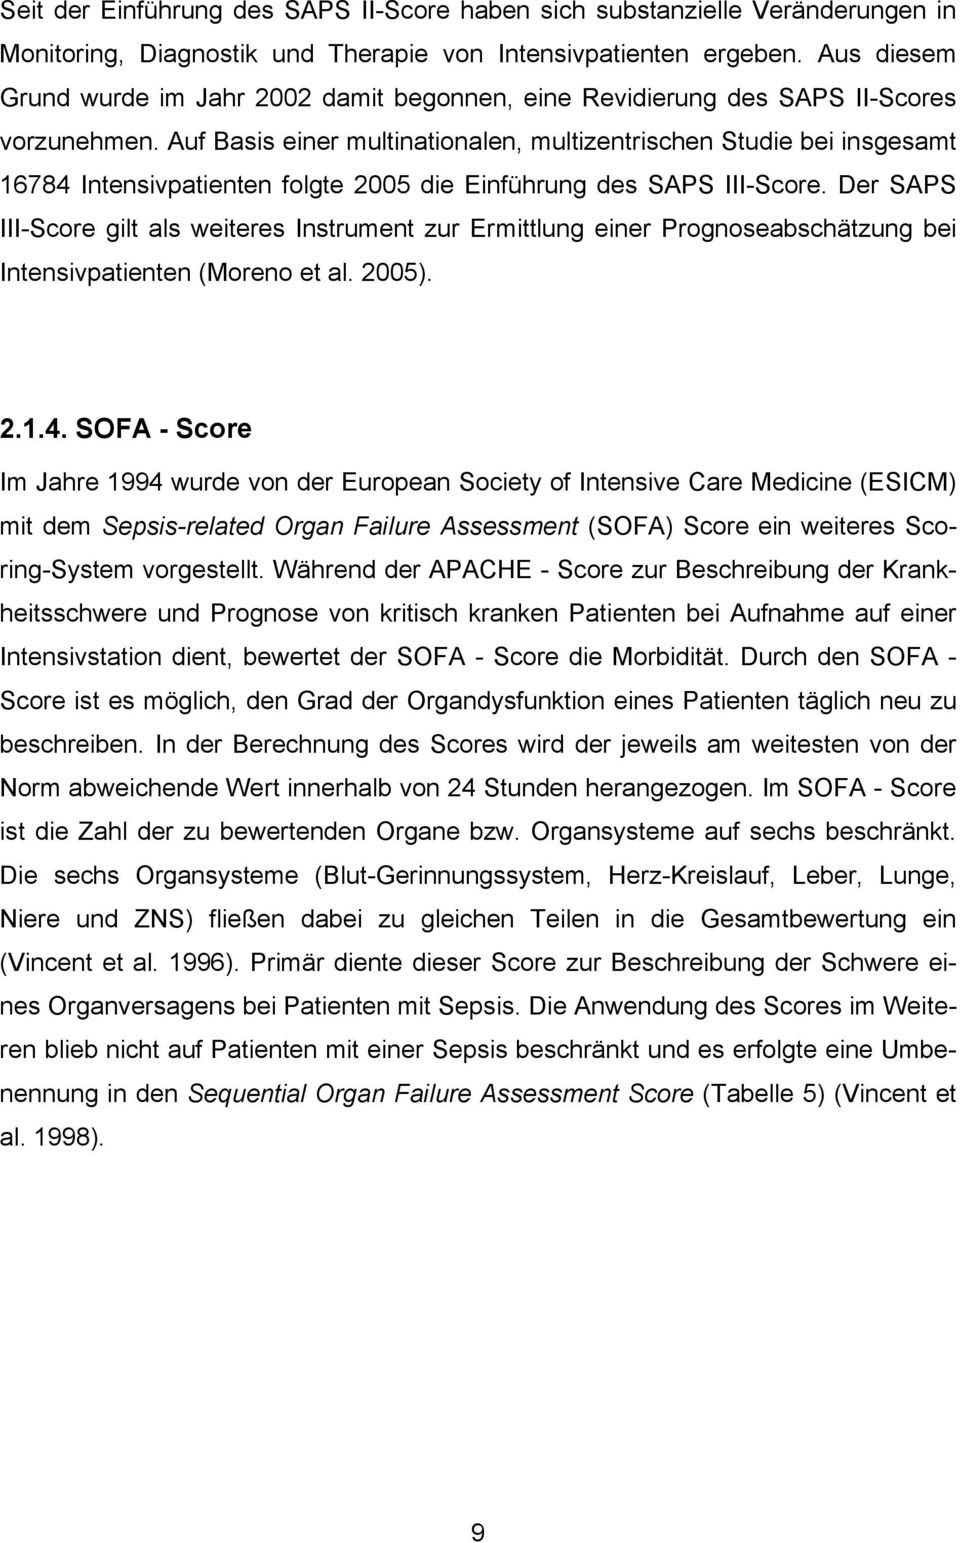 Auf Basis einer multinationalen, multizentrischen Studie bei insgesamt 16784 Intensivpatienten folgte 2005 die Einführung des SAPS III-Score.